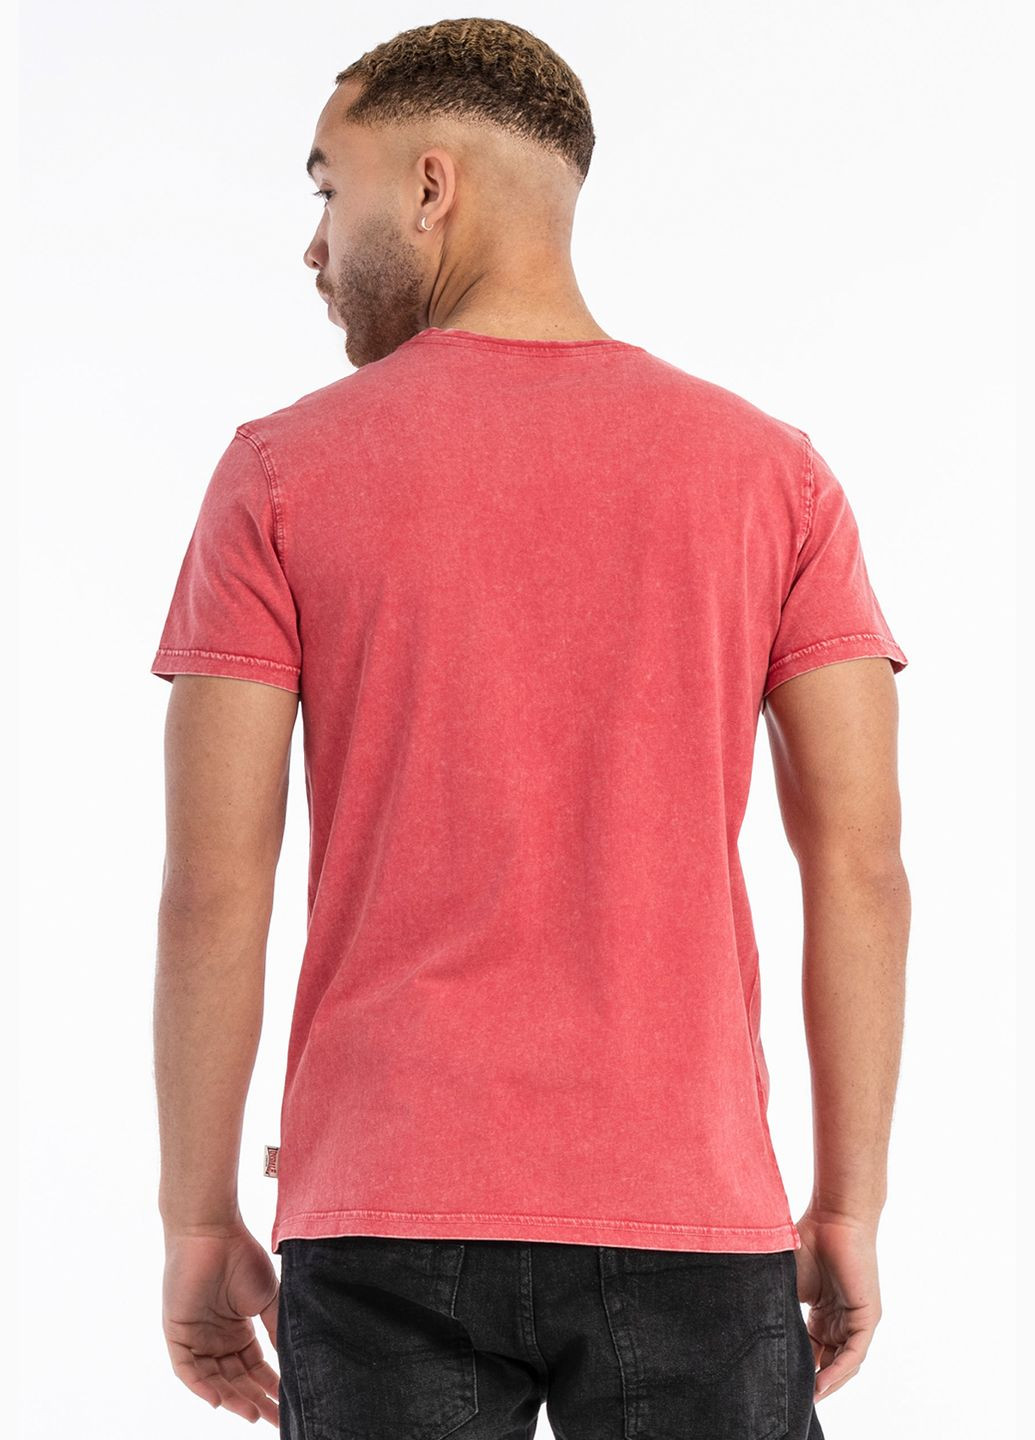 Светло-красная футболка Lonsdale Stofa